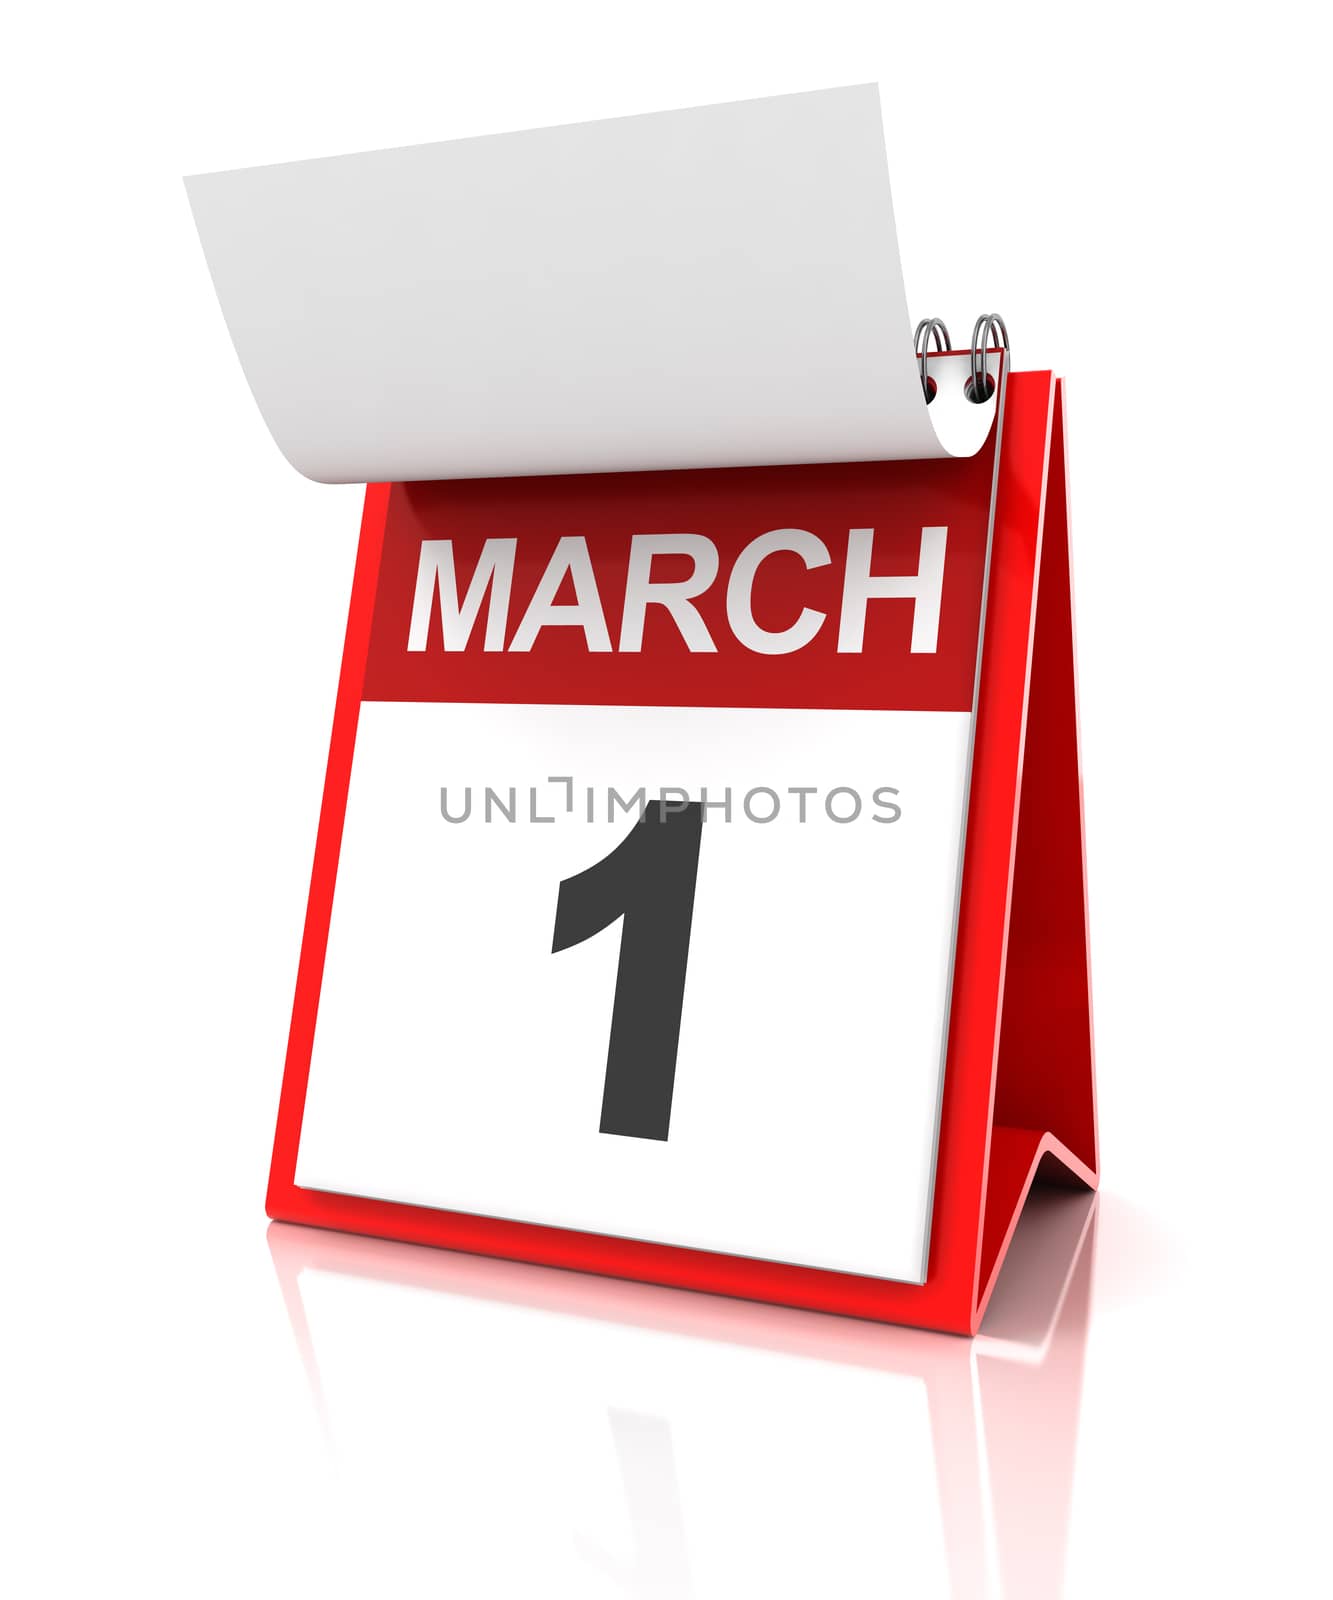 First of March calendar, 3d render